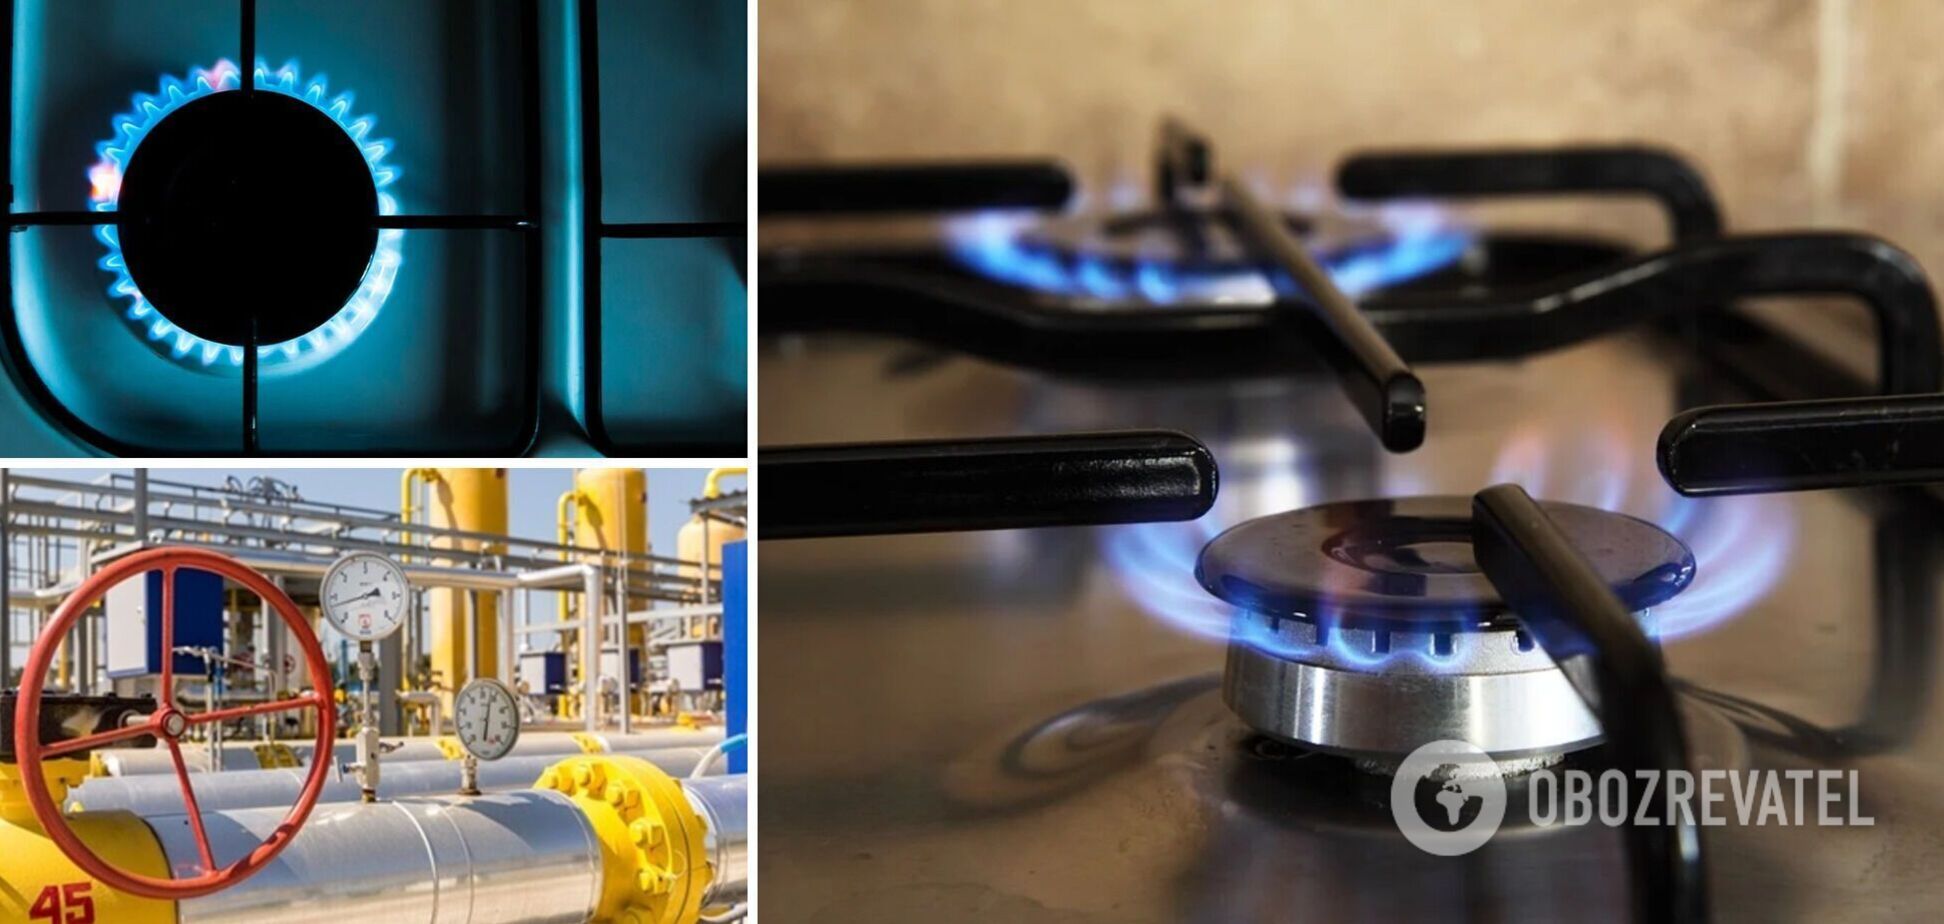 Українцям перерахували абонплату на газ: скільки тепер платитимемо